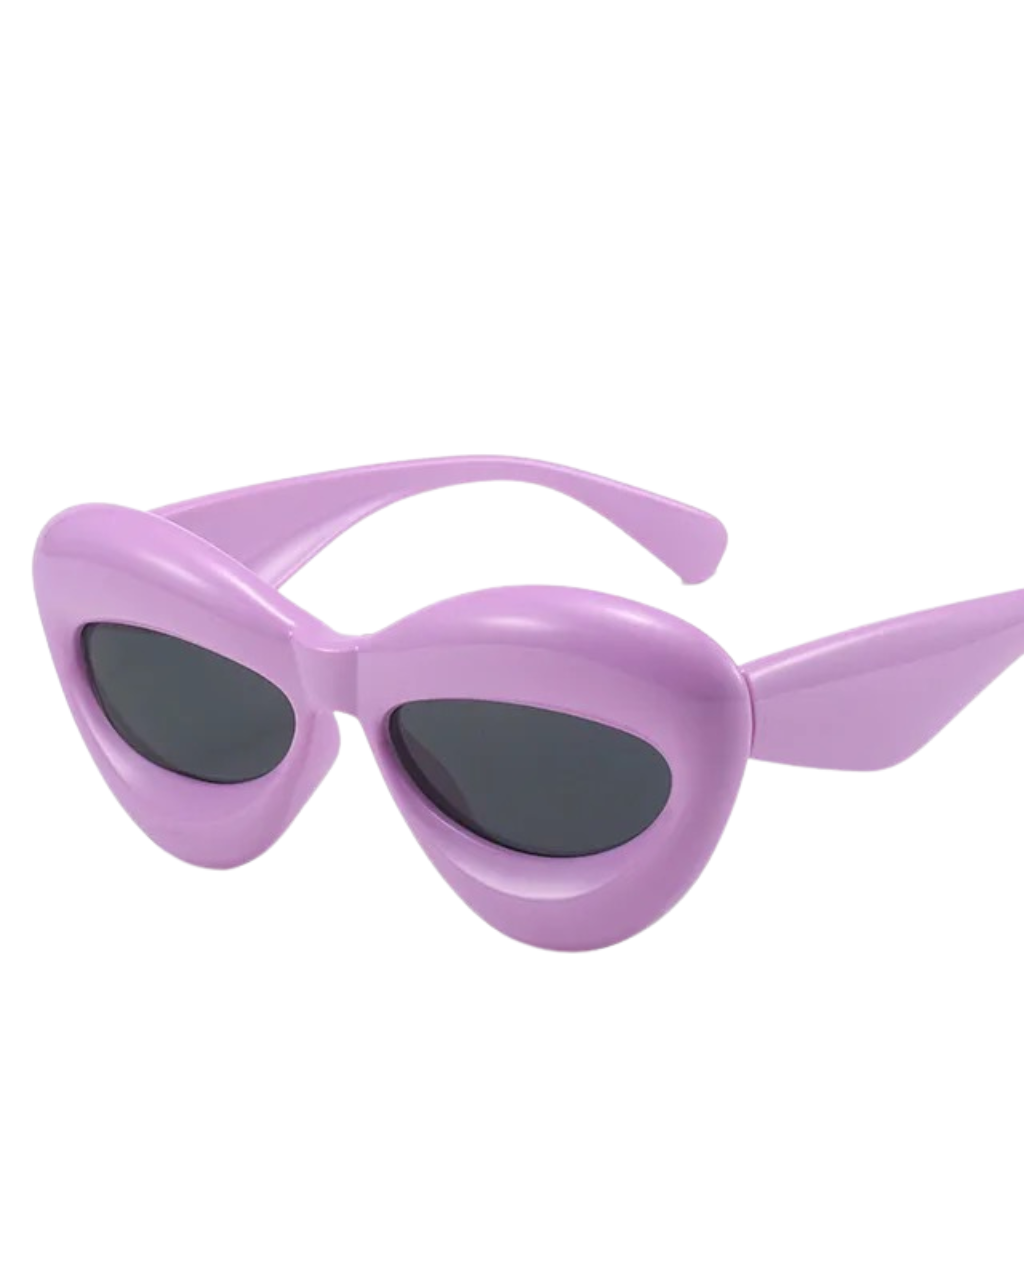 'True' Oval Sunglasses (Lavender)